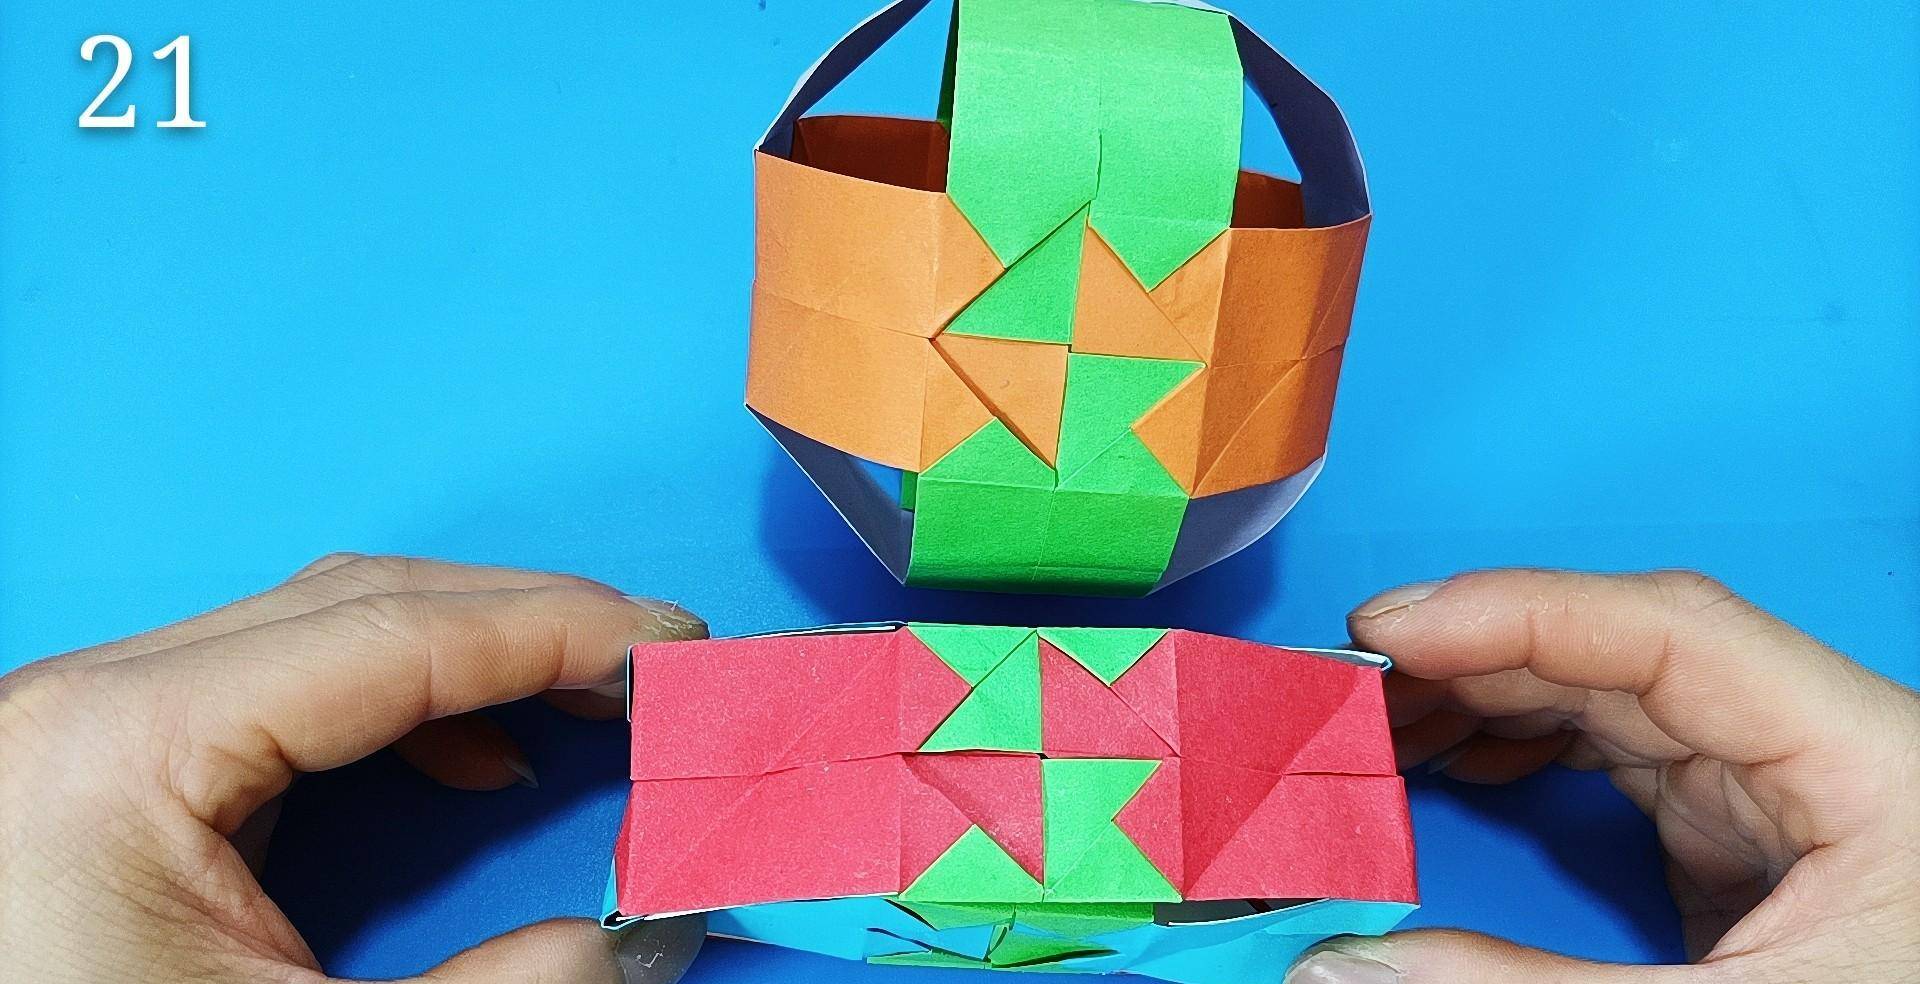 折纸神奇的百变魔术球,一拉一扭变成正方形盒子,还能变其他形状